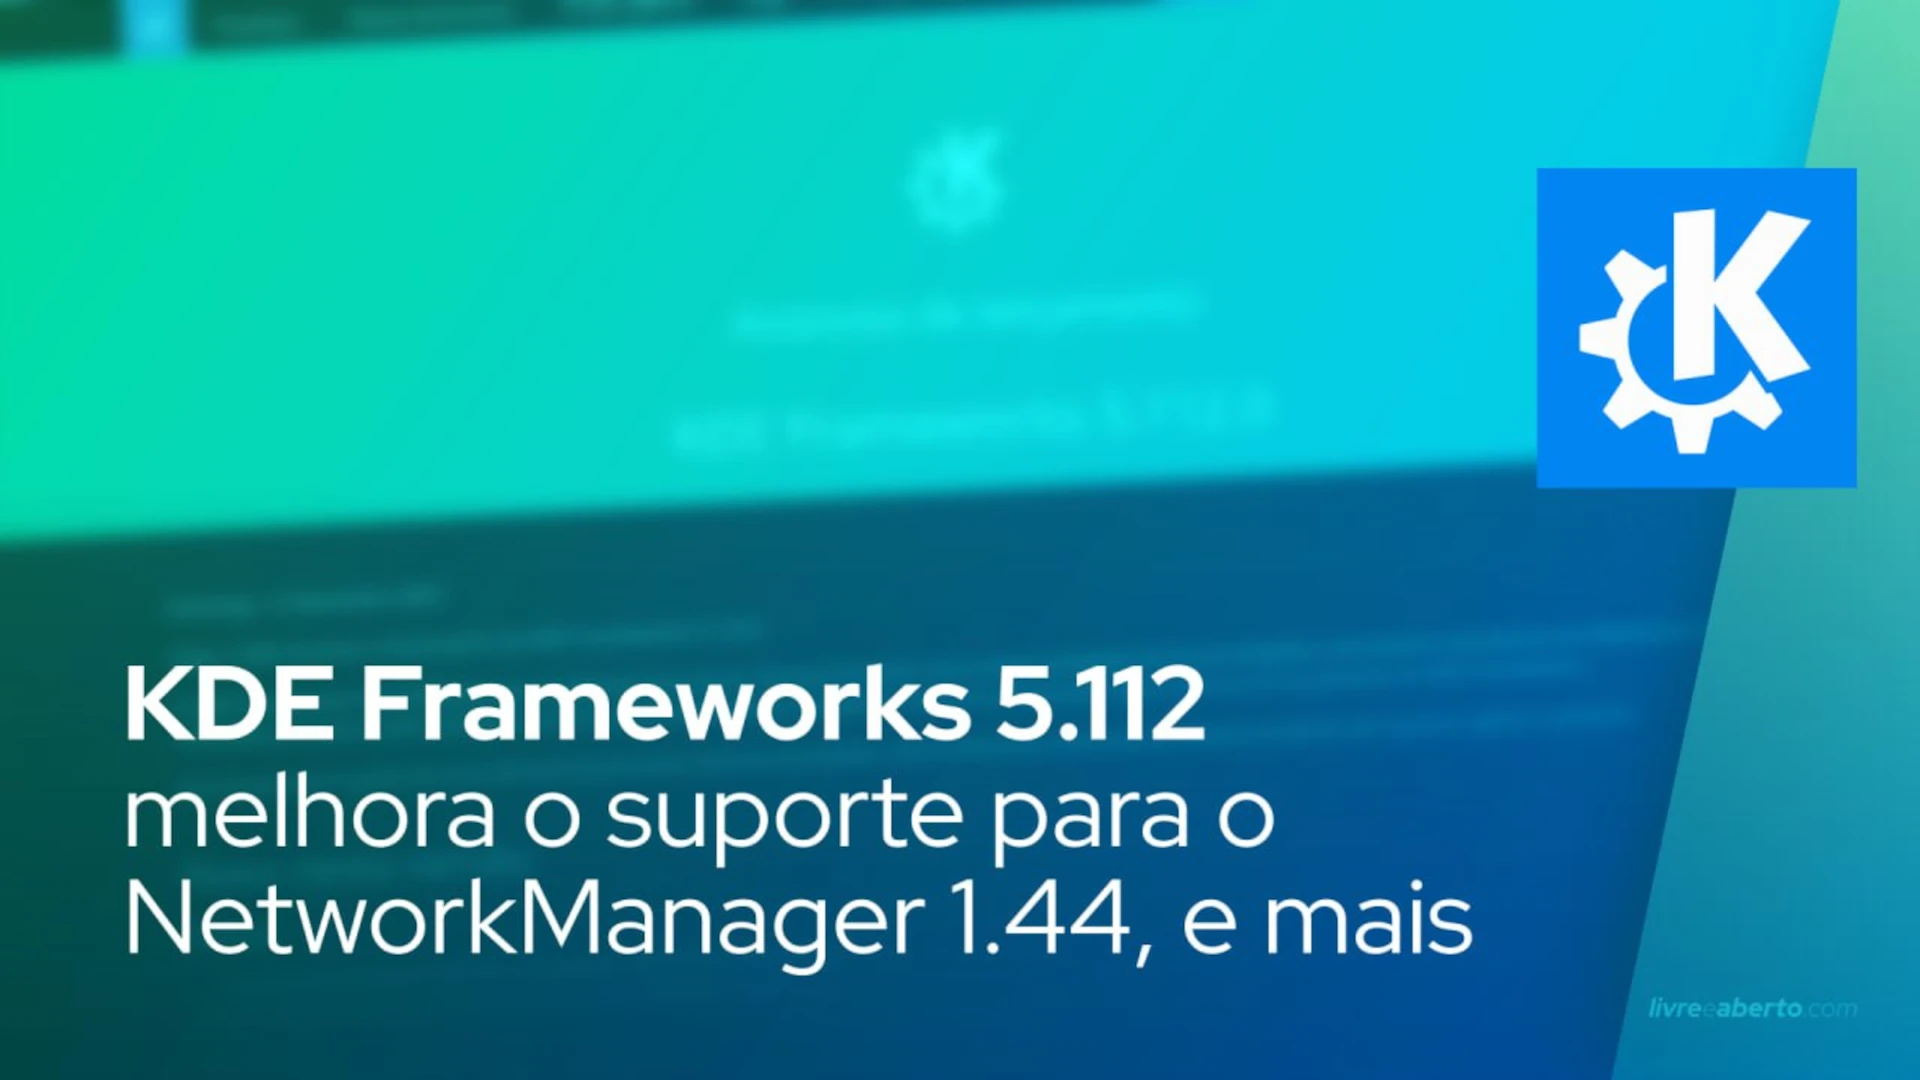 KDE Frameworks 5.112 melhora o suporte para o NetworkManager 1.44, corrige bugs